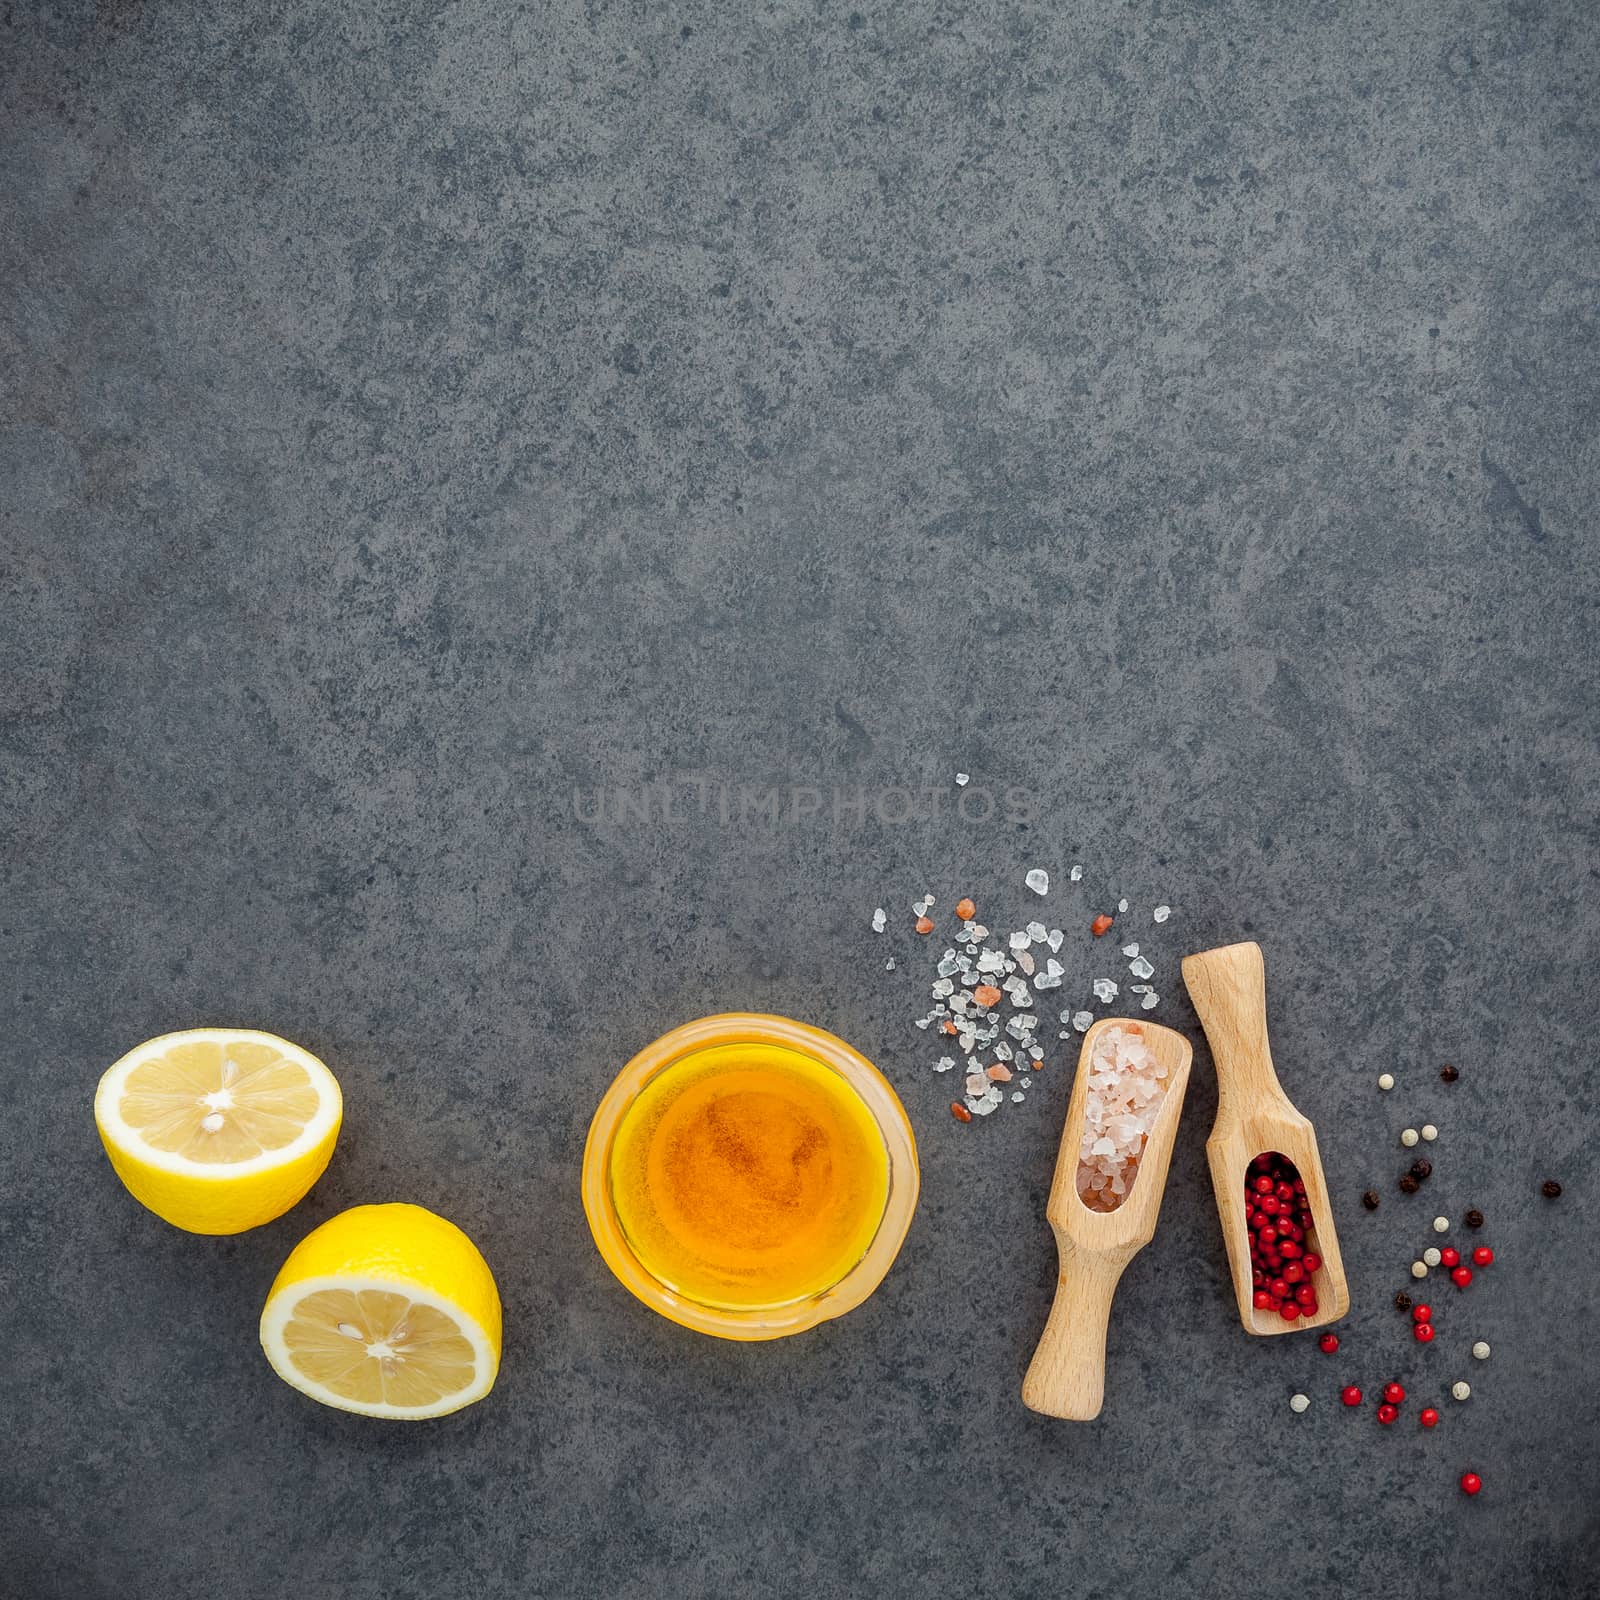 The lemon vinaigrette dressing ingredients lemon, olive oil, him by kerdkanno